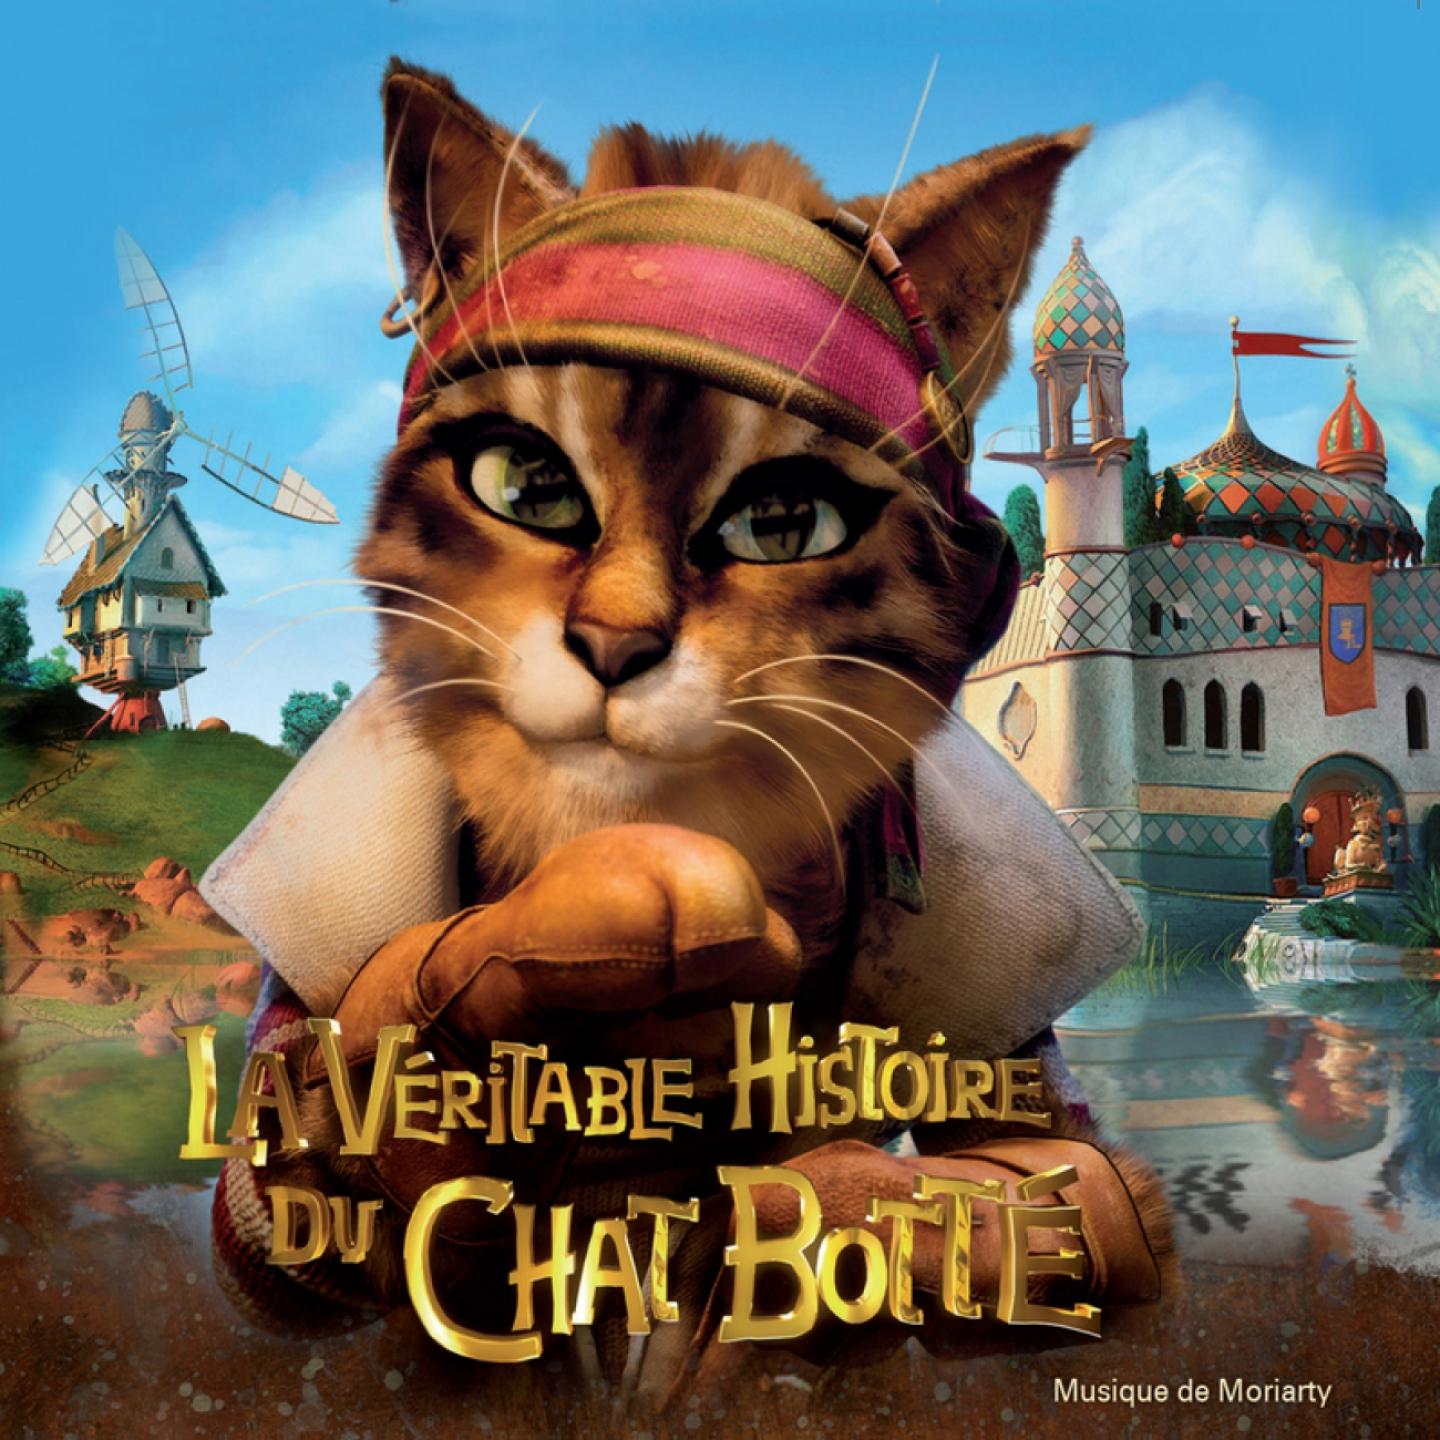 La ve ritable histoire du chat botte Original Motion Picture Soundtrack